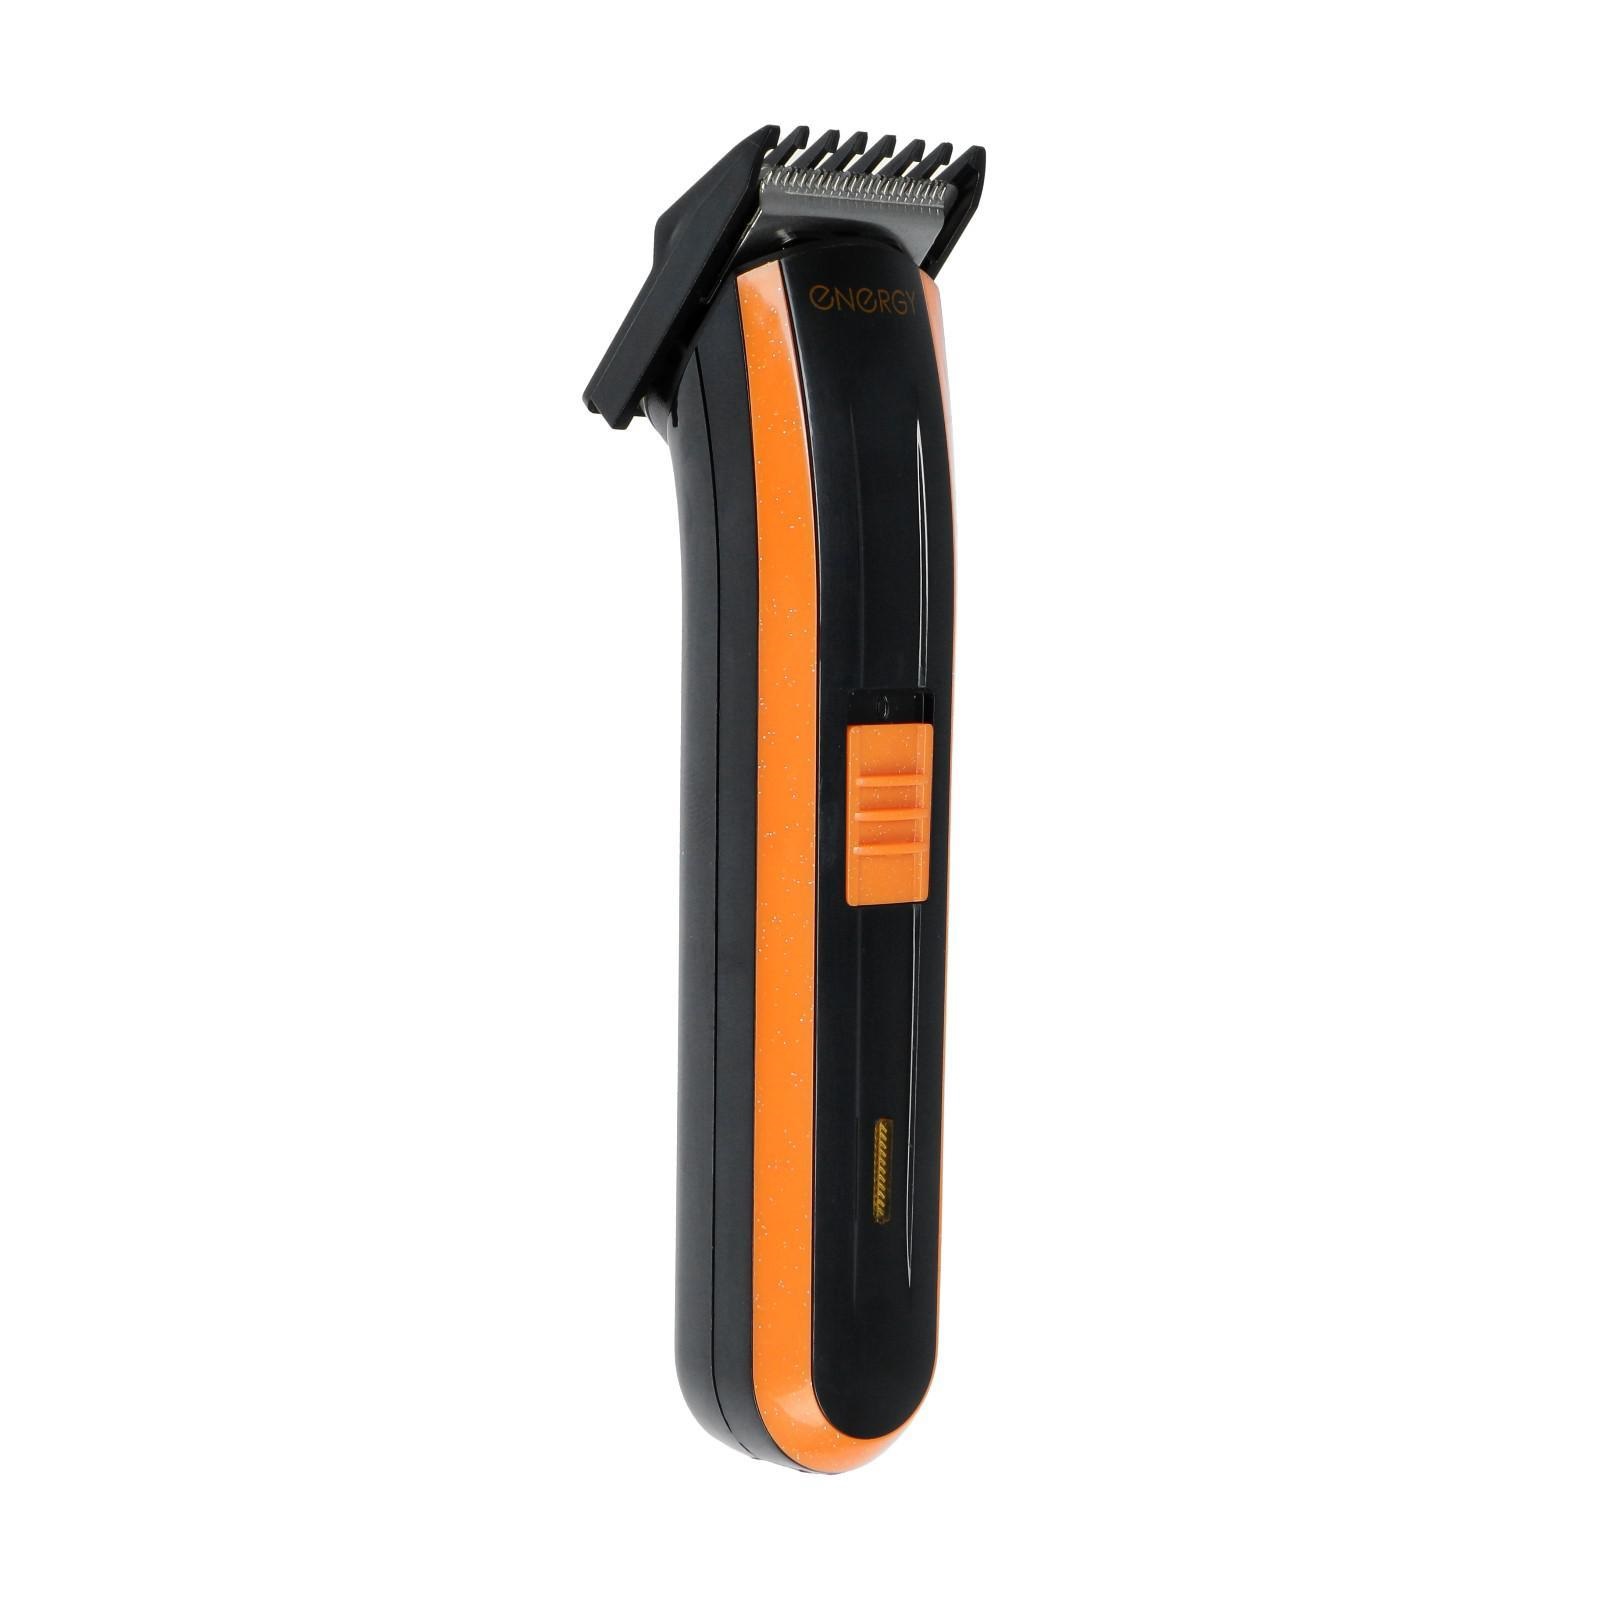 Машинка для стрижки волос Energy EN-716 оранжевый, черный